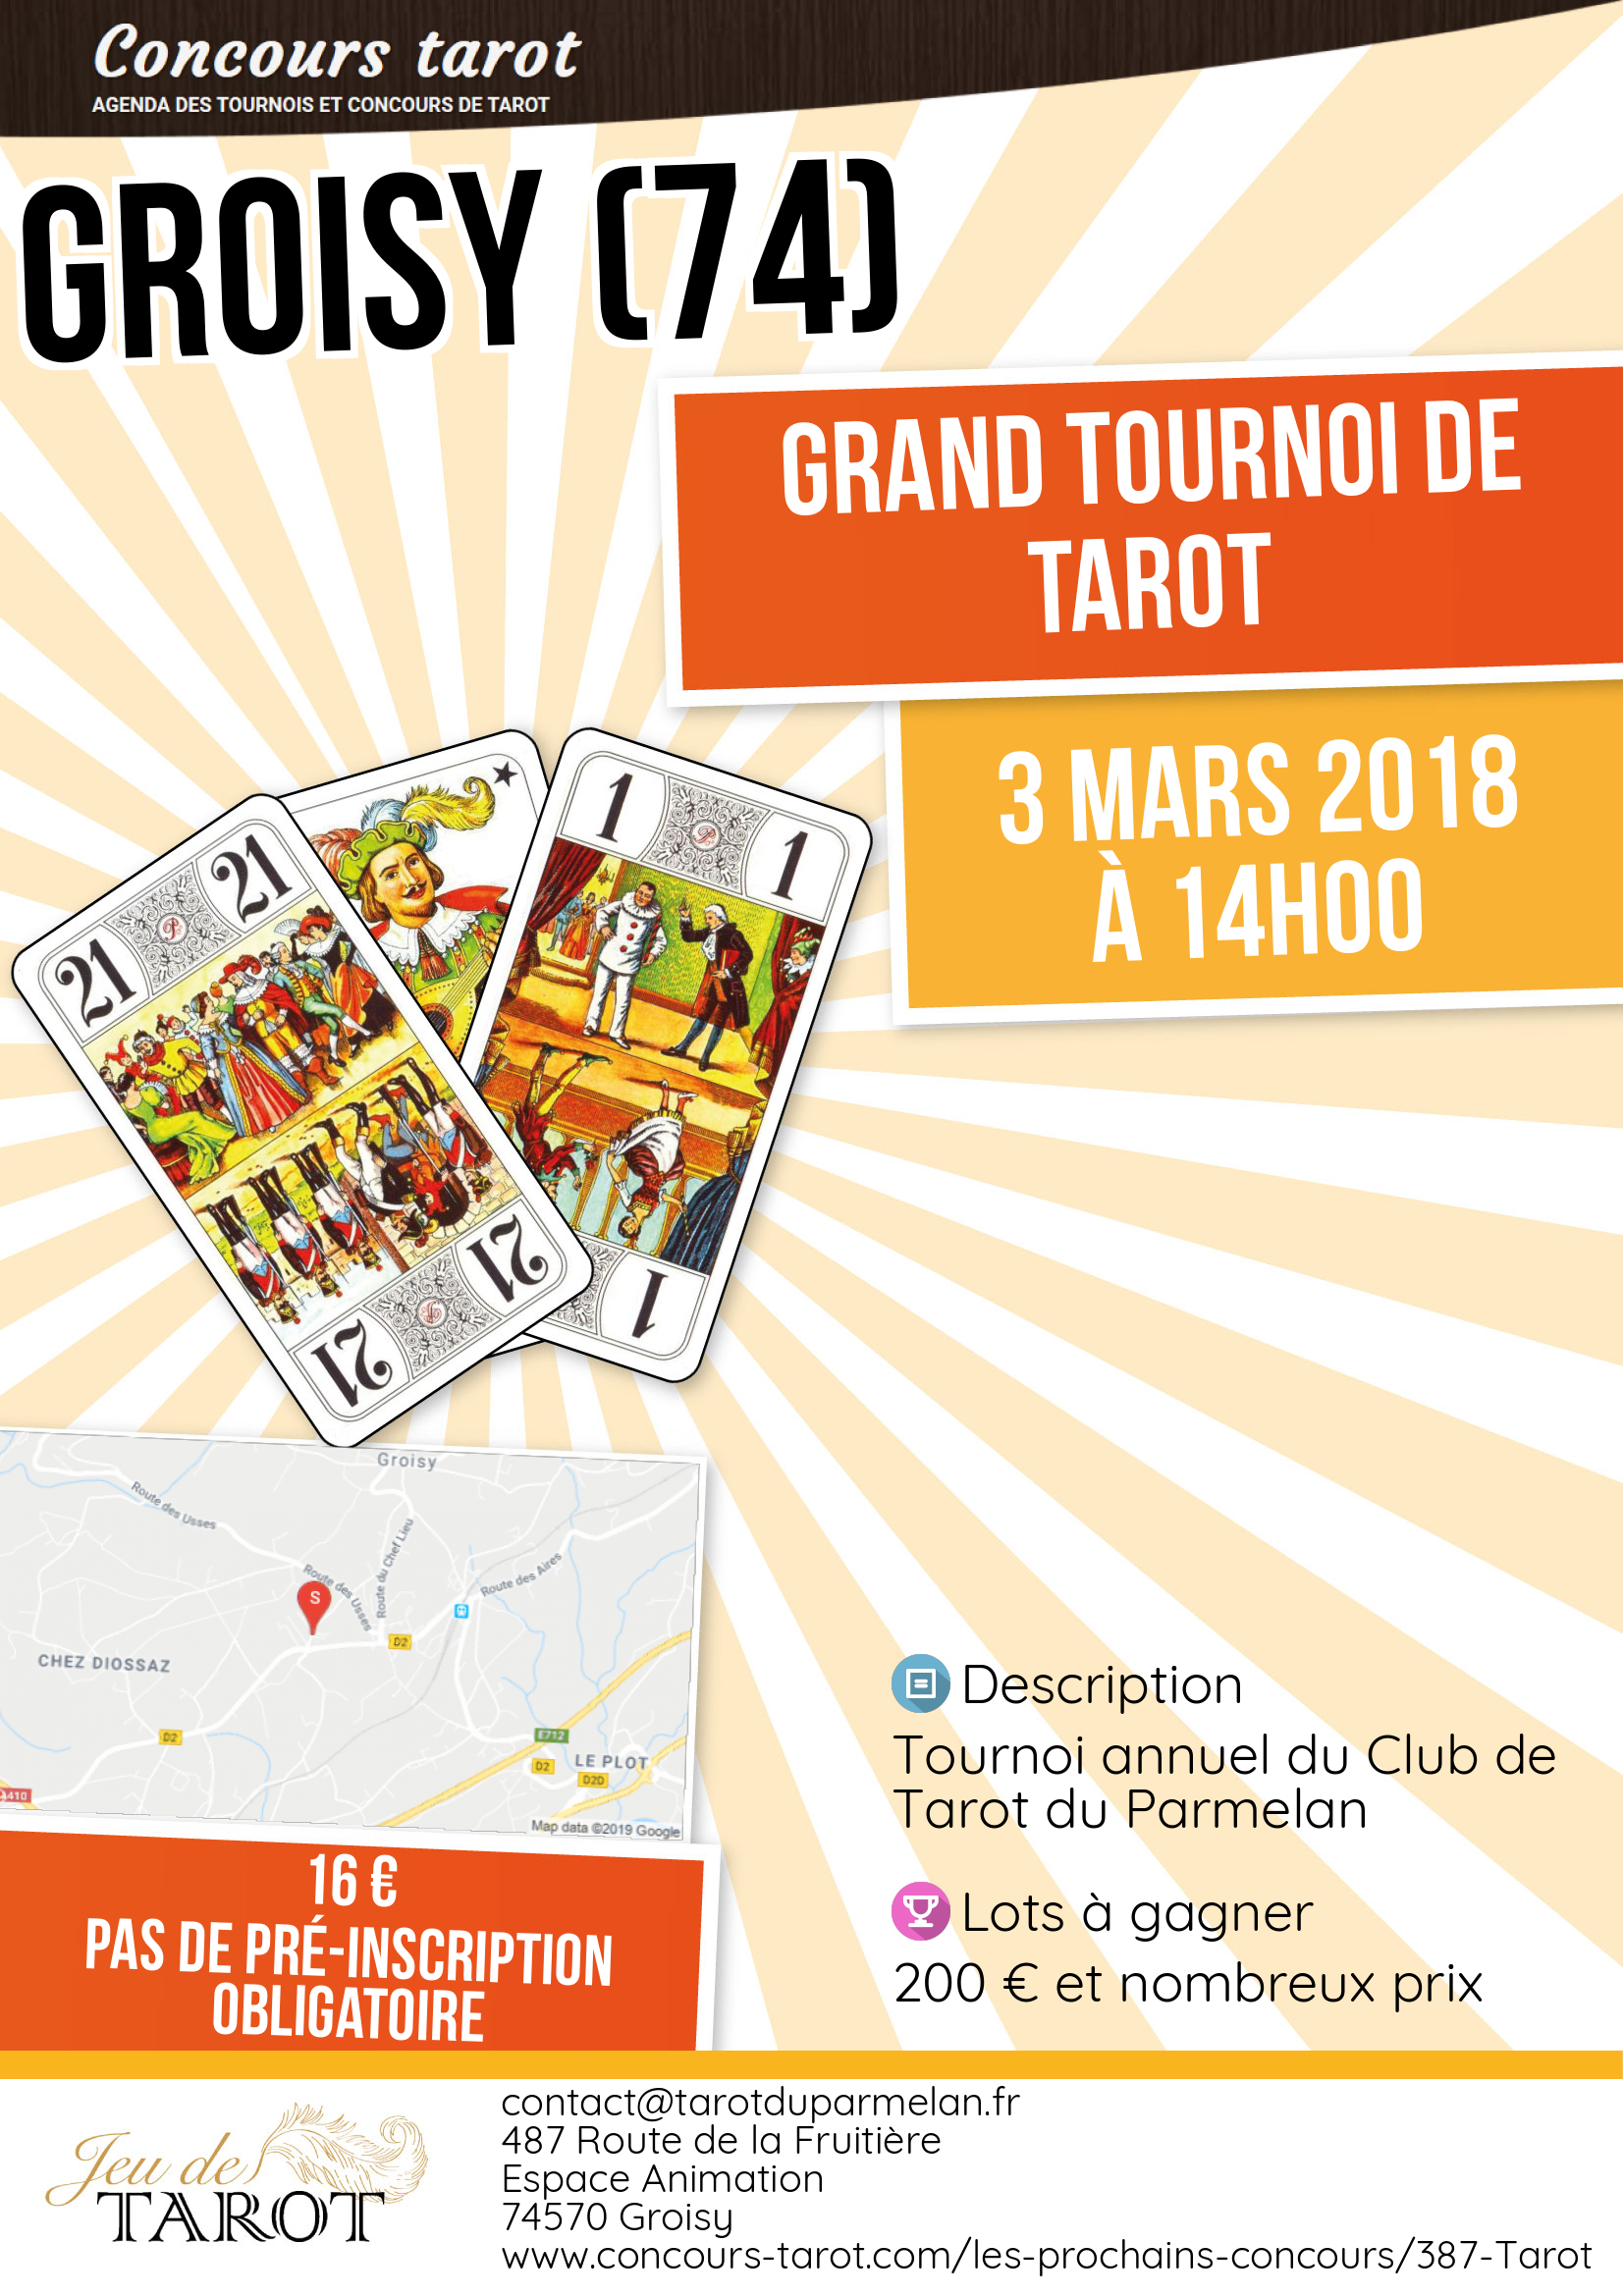 Grand Tournoi de Tarot